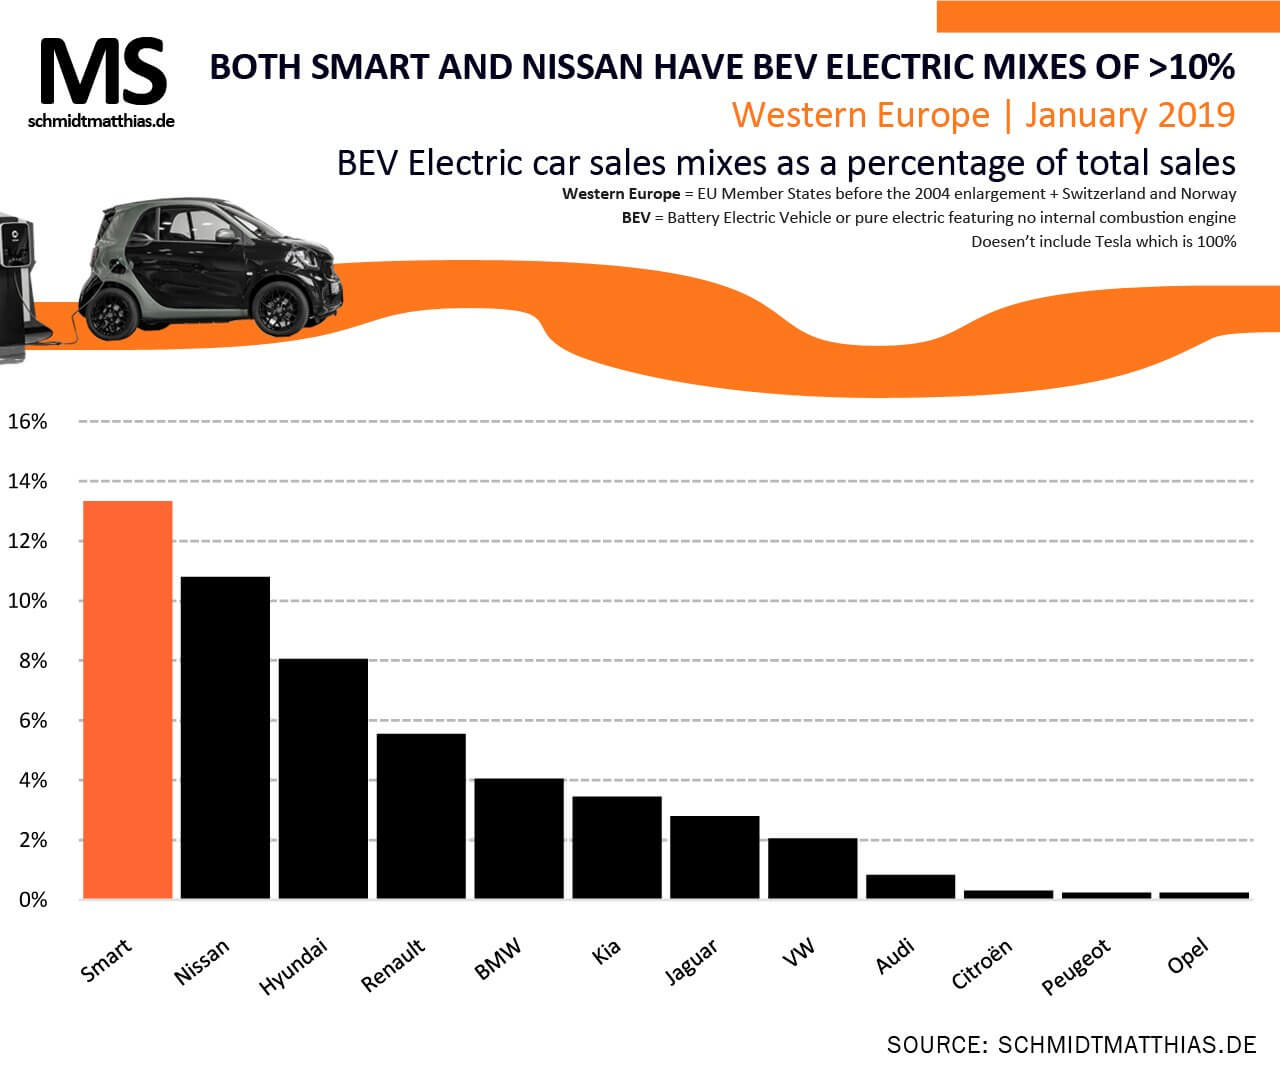 Наивысшая доля электрокаров в общих продажах автомобилей в Европе среди разных брендов